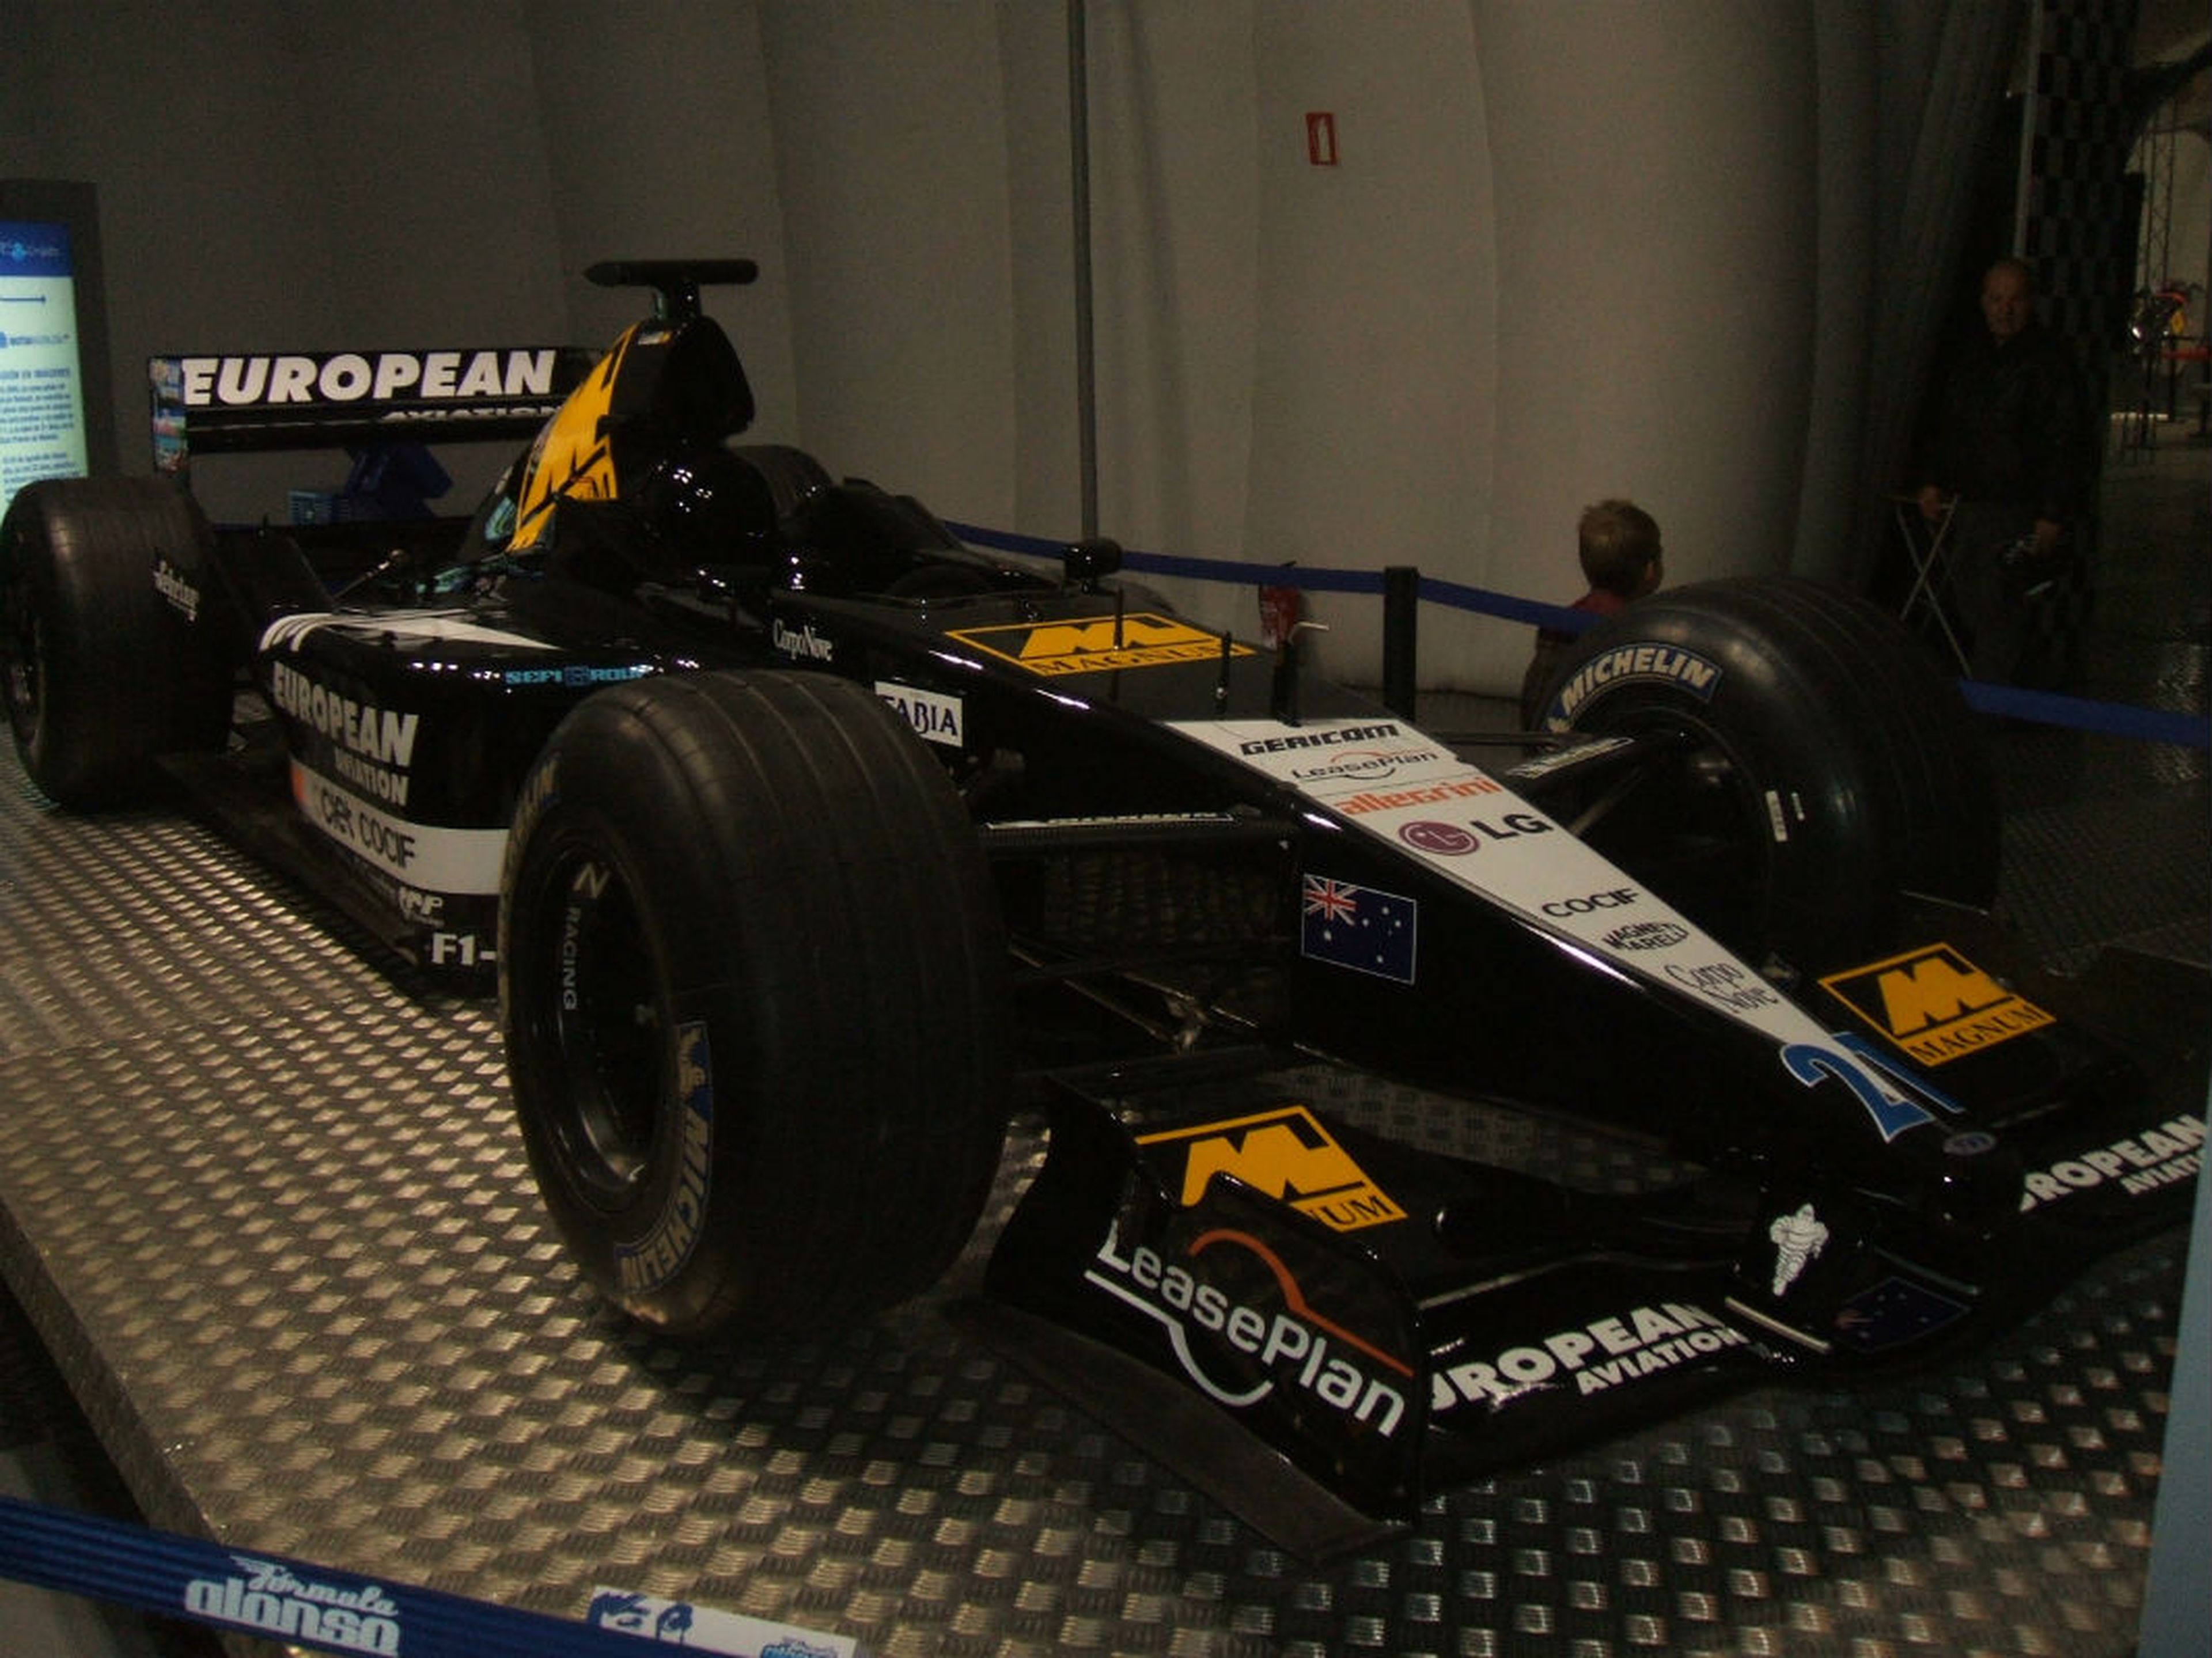 El Minardi con el que Fernando Alonso disputó la temporada 2001 de Fórmula 1, en su museo